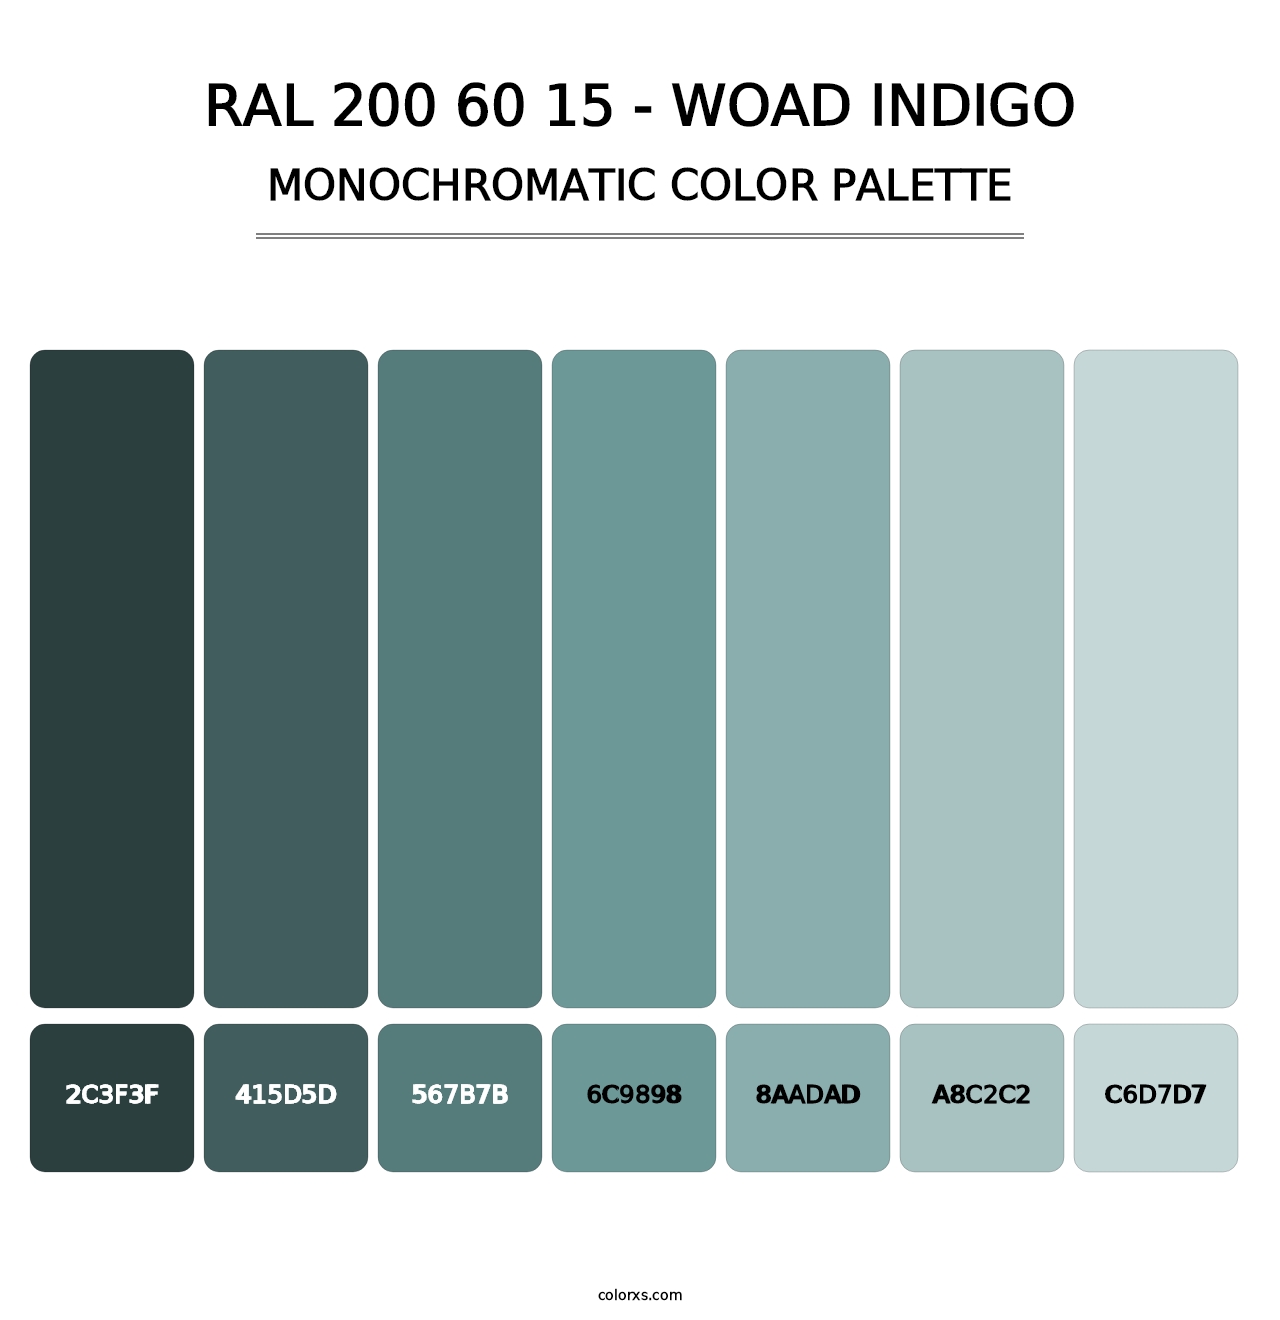 RAL 200 60 15 - Woad Indigo - Monochromatic Color Palette